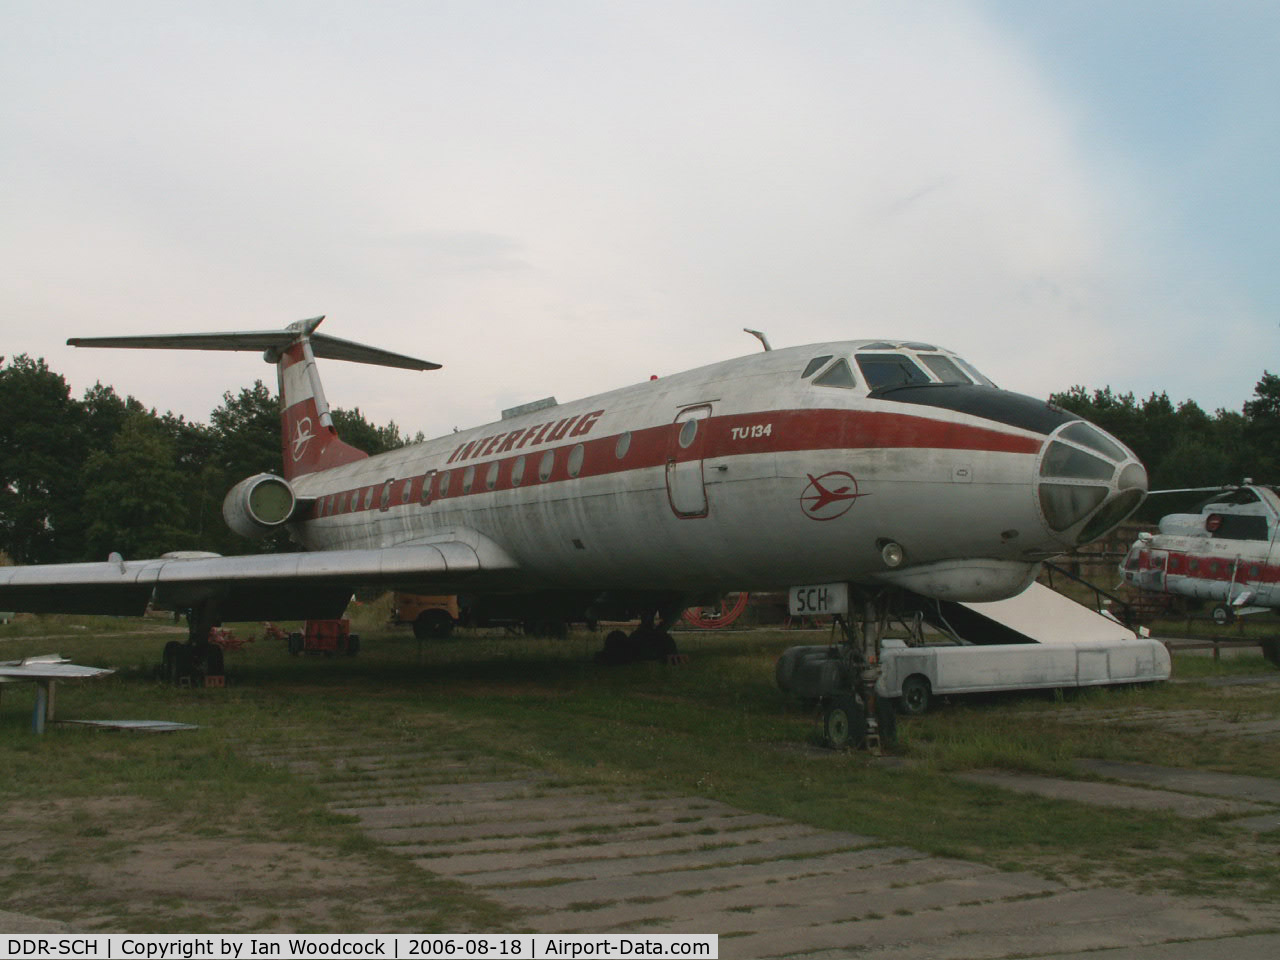 DDR-SCH, Tupolev Tu-134 C/N 9350906, Tupolev Tu-134/Interflug/Finow-Brandenburg